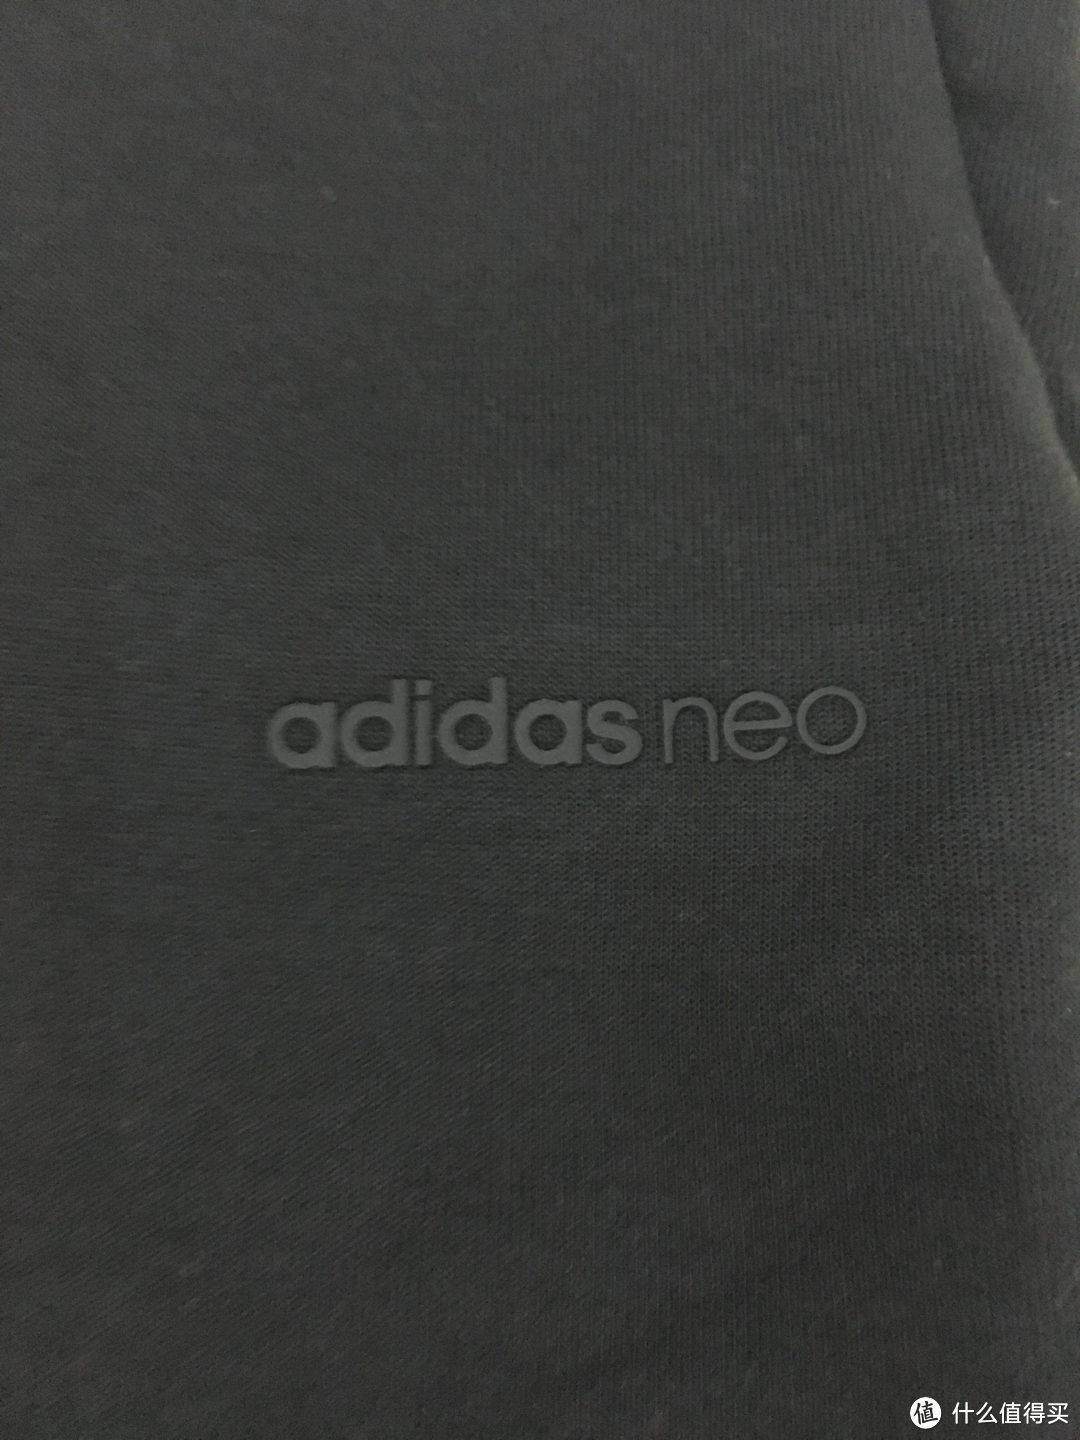 厚实有型 Adidas neo女子运动裤CZ1671